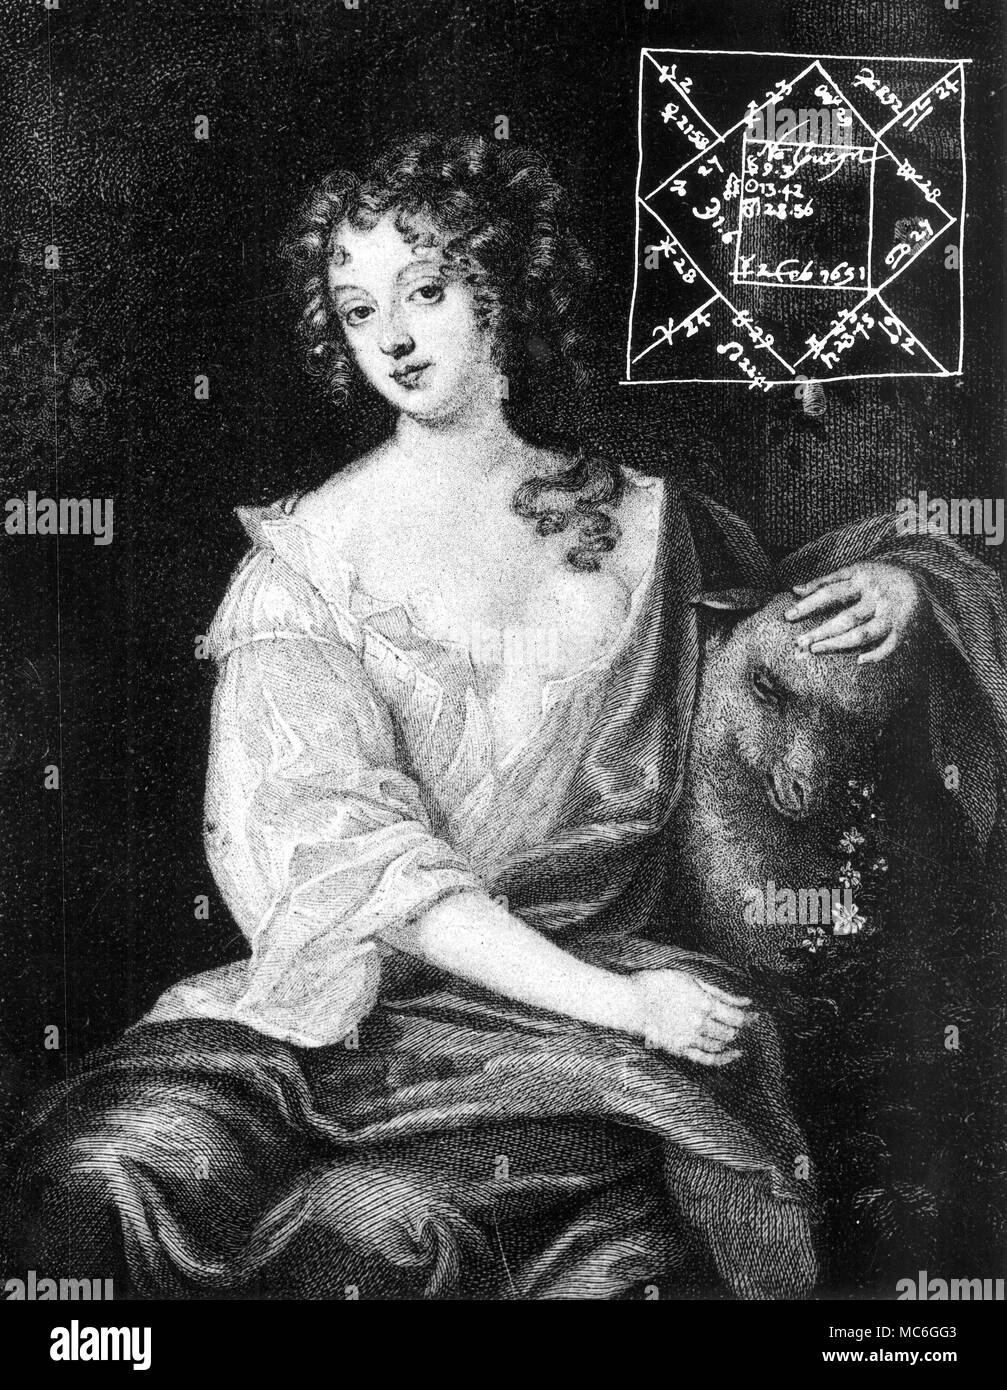 NELL GWYN HOROSCOPES - le portrait et le tableau de la naissance de l'actrice Nell Gwyn, qui était la favorite du roi Charles II d'Angleterre. Elle est née à Londres, le 2 février 1651. Banque D'Images